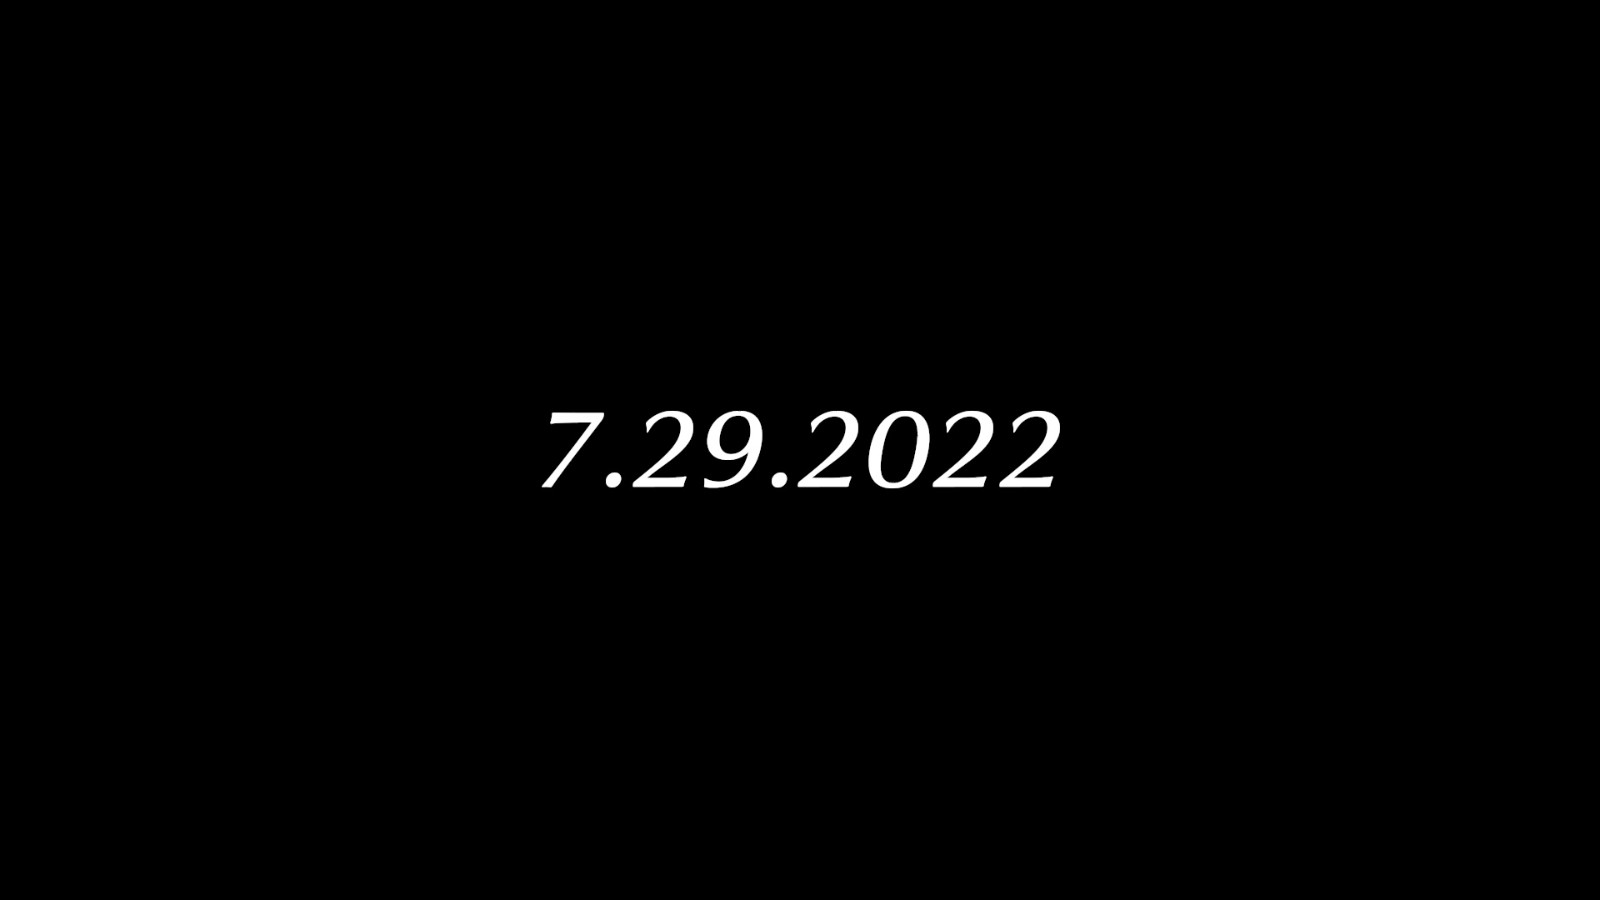 《异度神剑3》发售日提前 现已改为7月29日发售